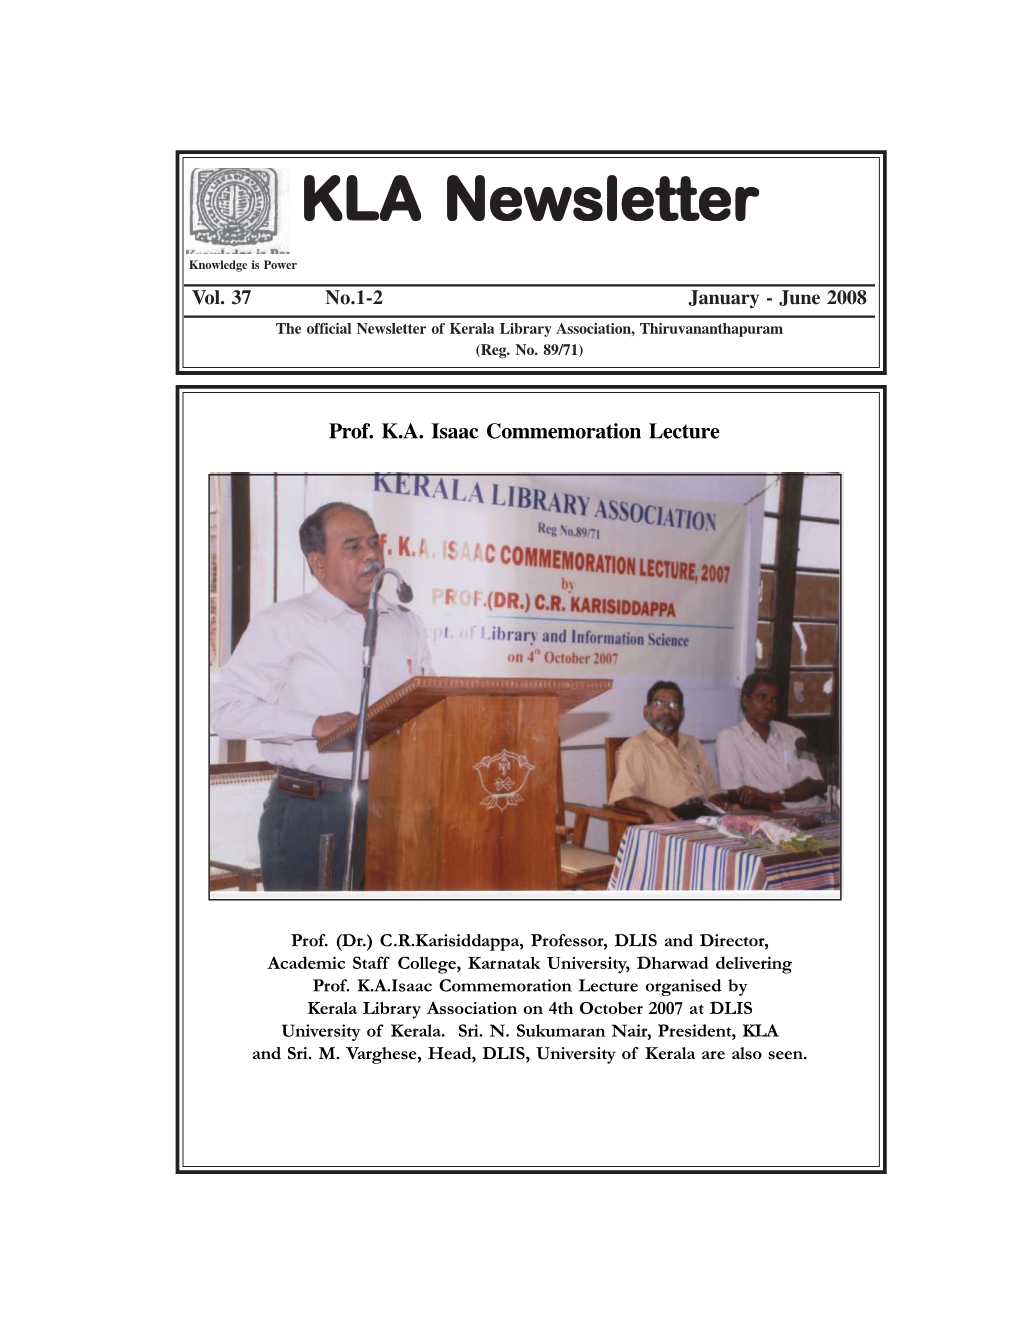 KLA Newsletter Vol.37 No.1-2 Jan.-June 2008